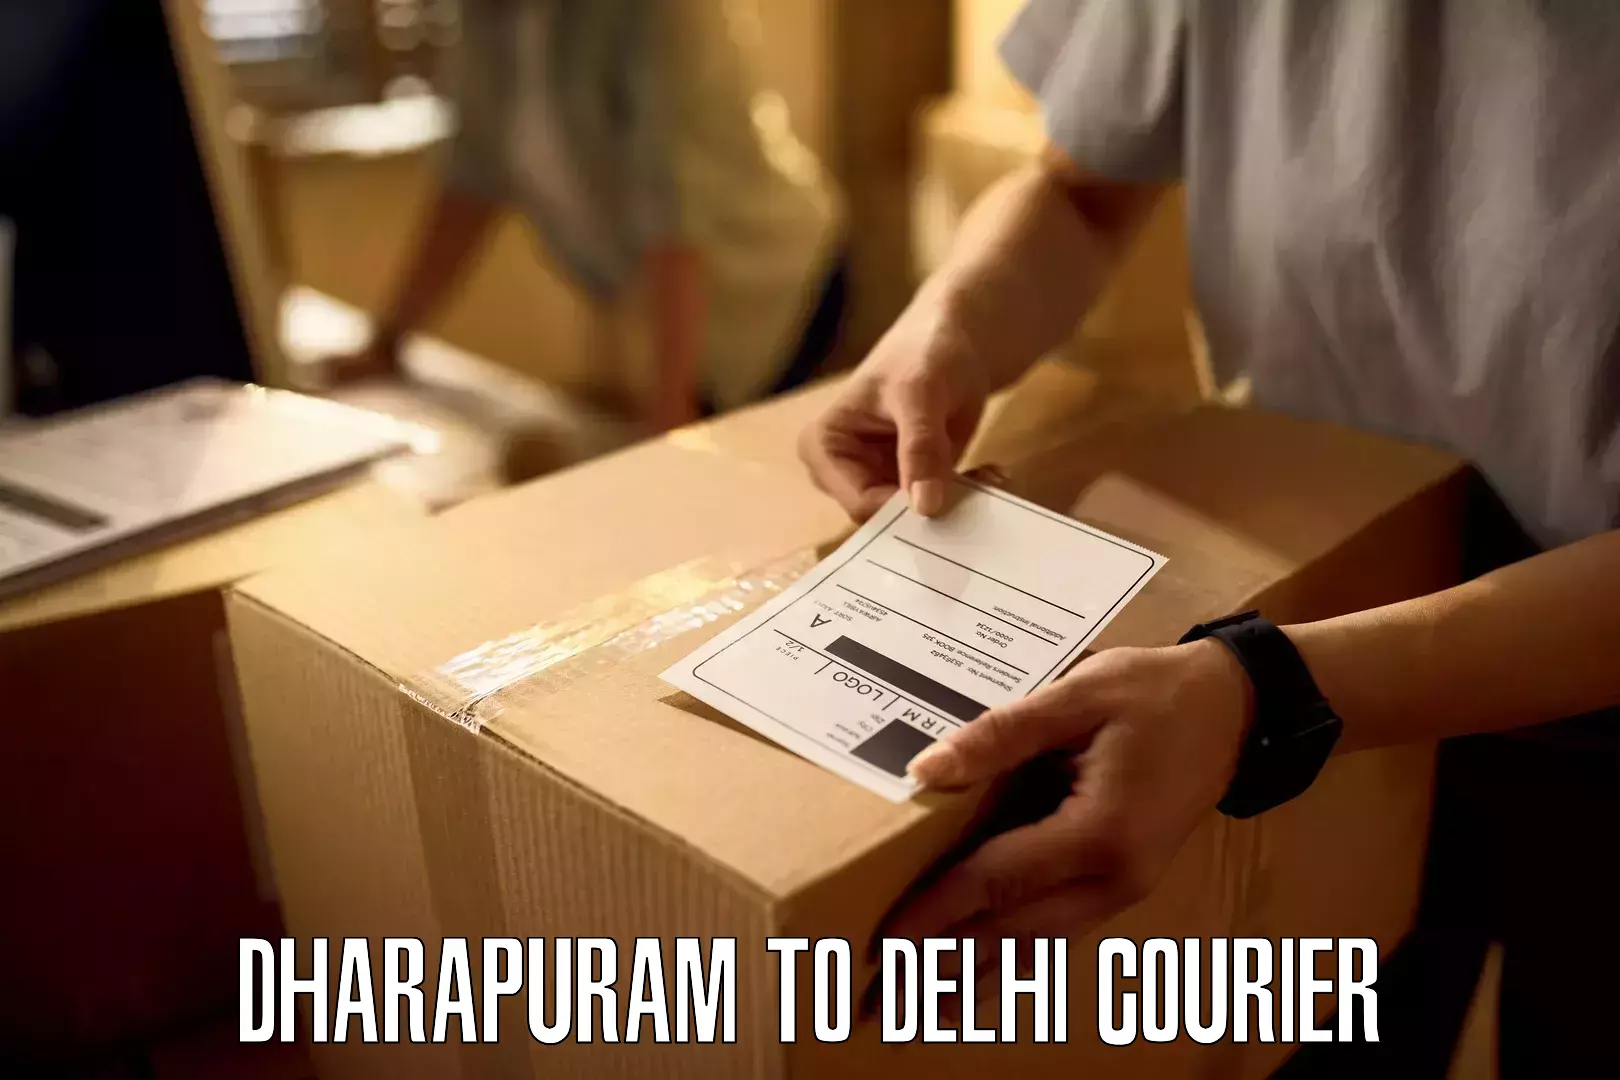 International courier networks Dharapuram to Burari